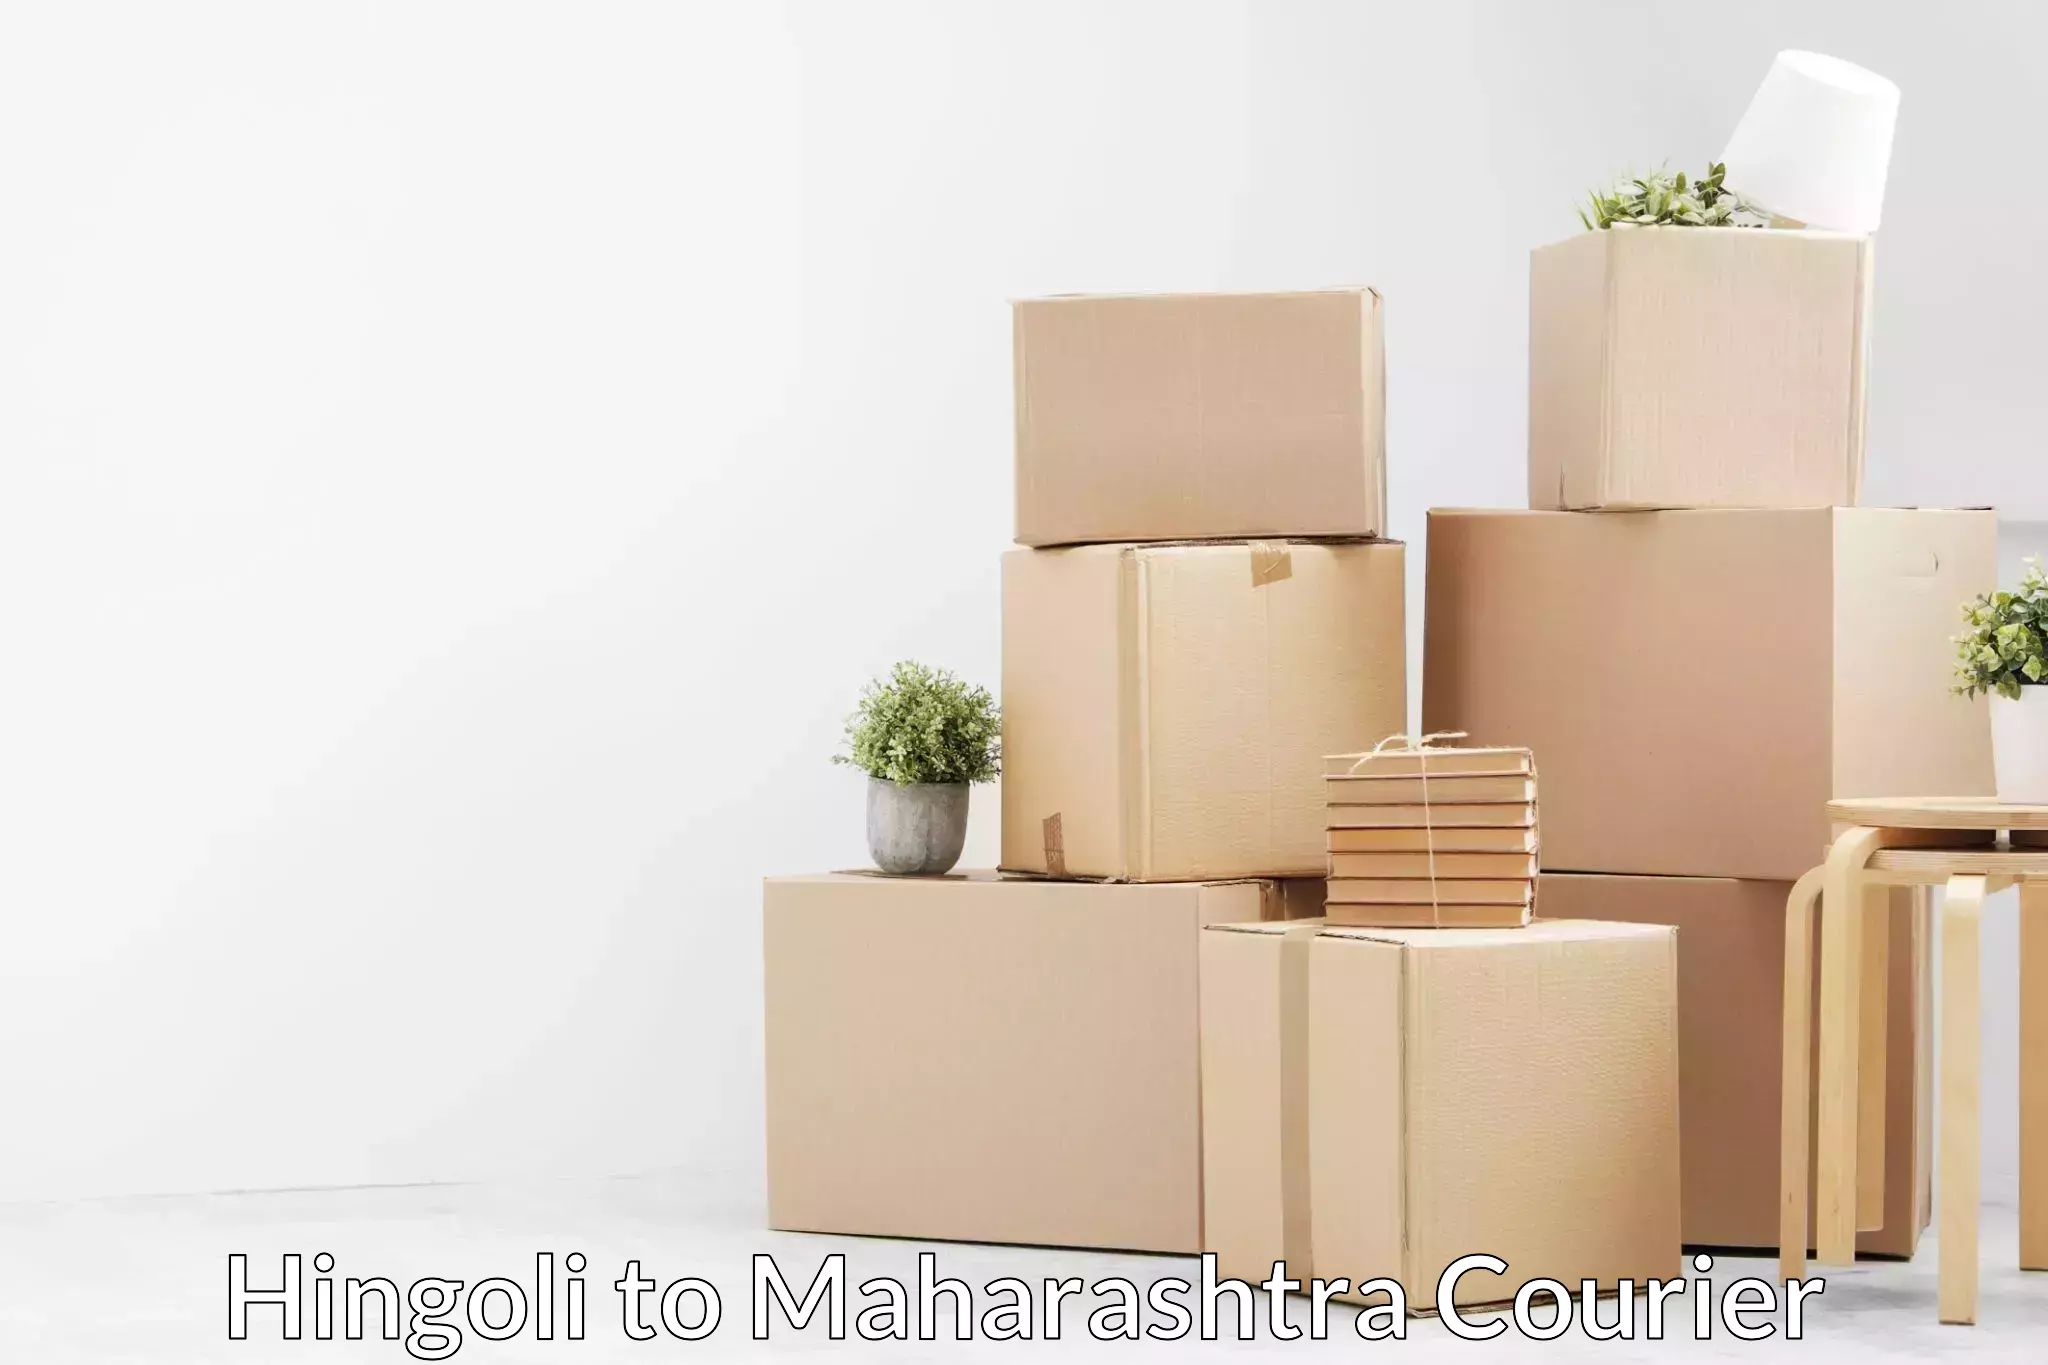 Affordable home movers Hingoli to Yeola